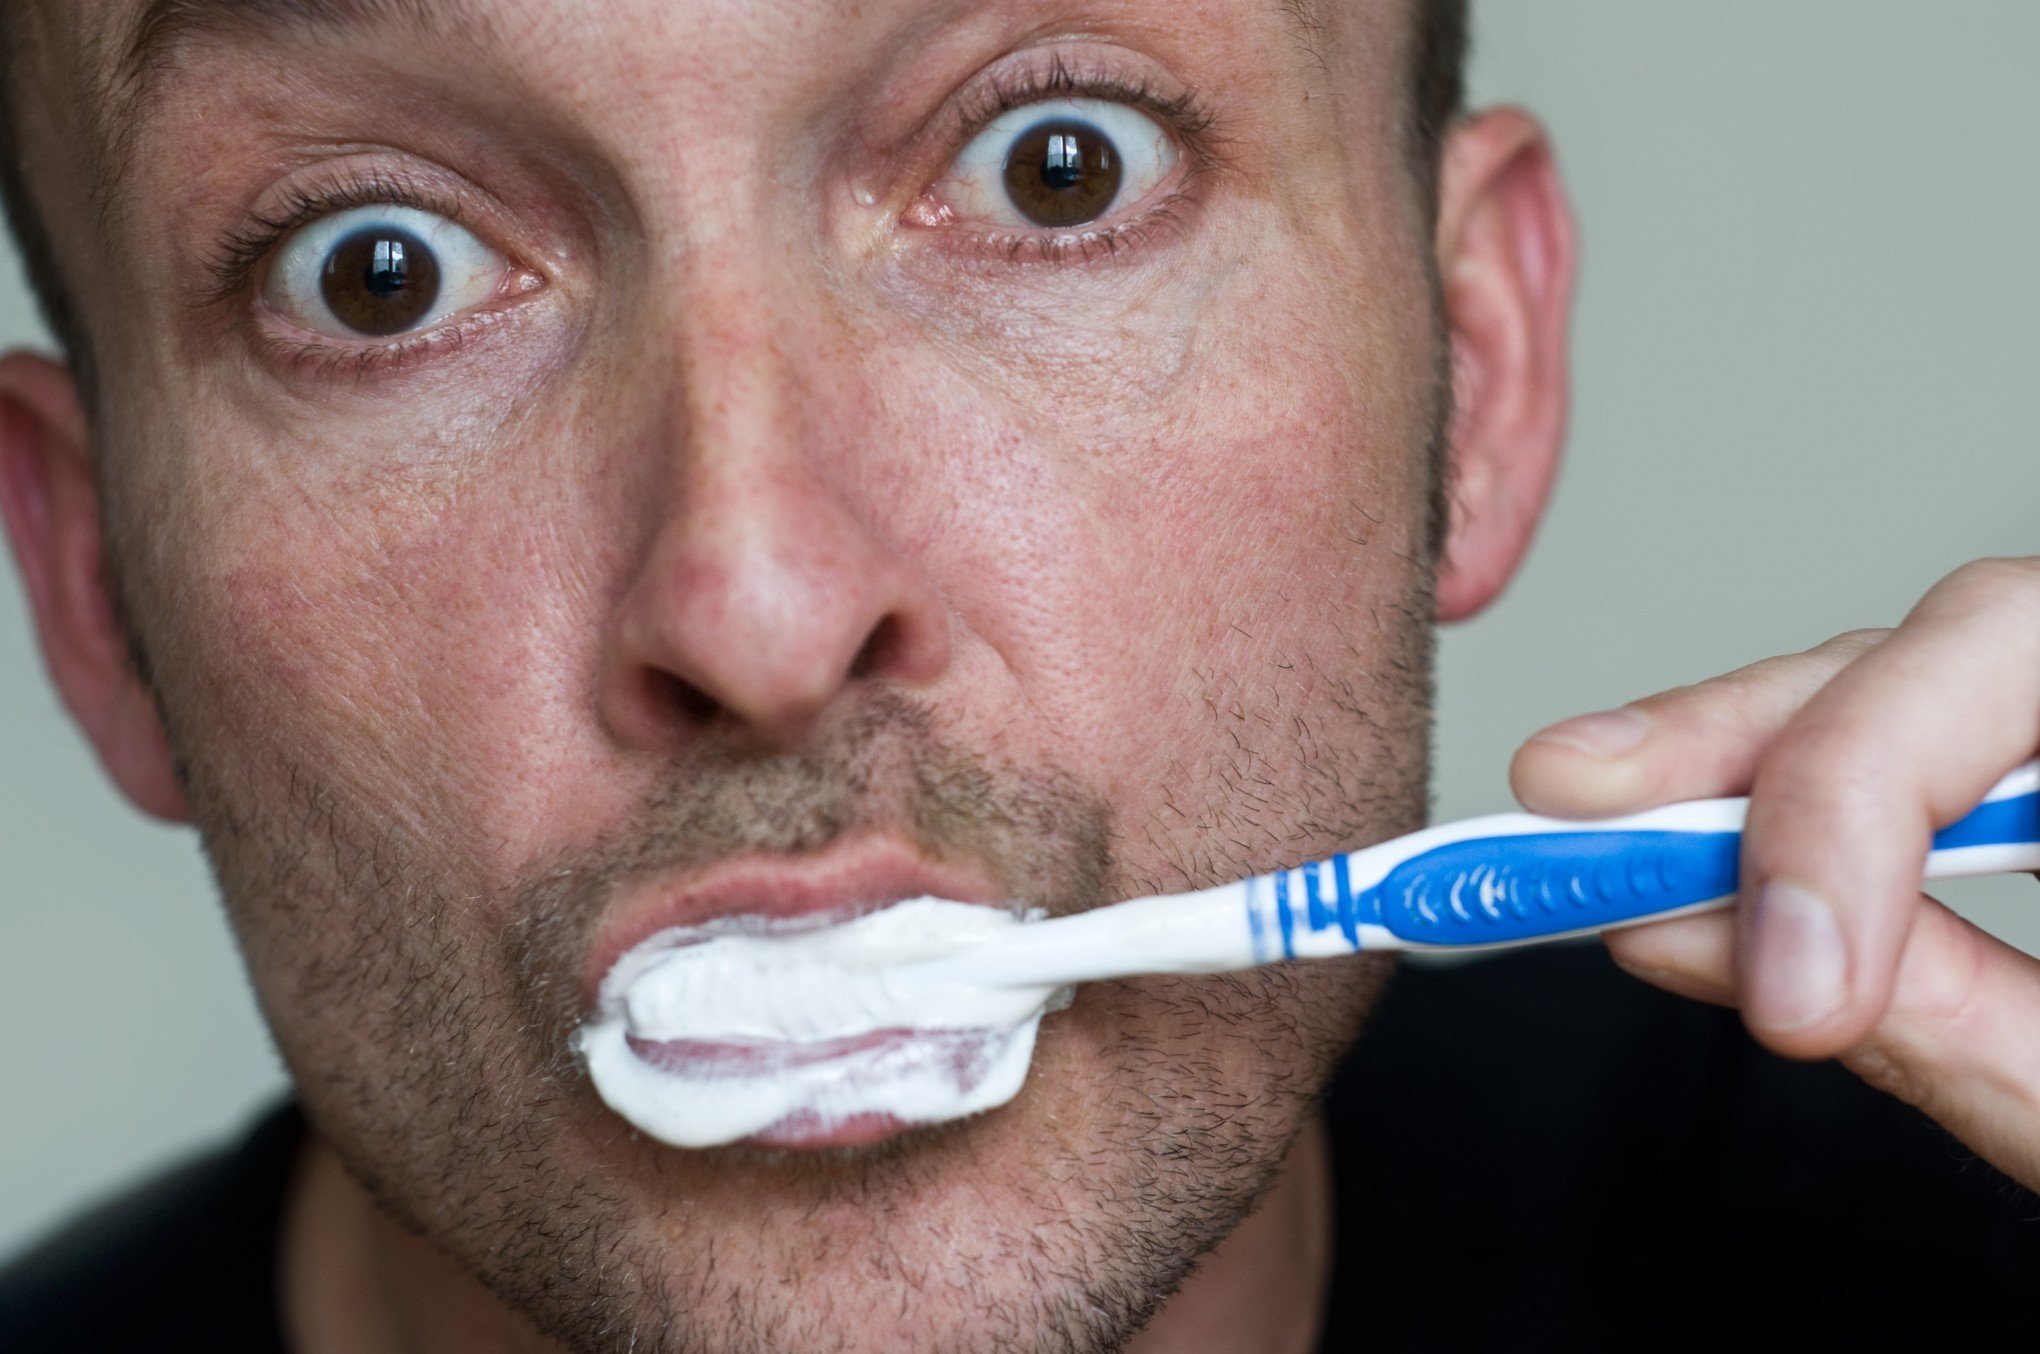 ÉRICK JACQUIN: Três problemas que podem ser consequência da falta de higiene bucal